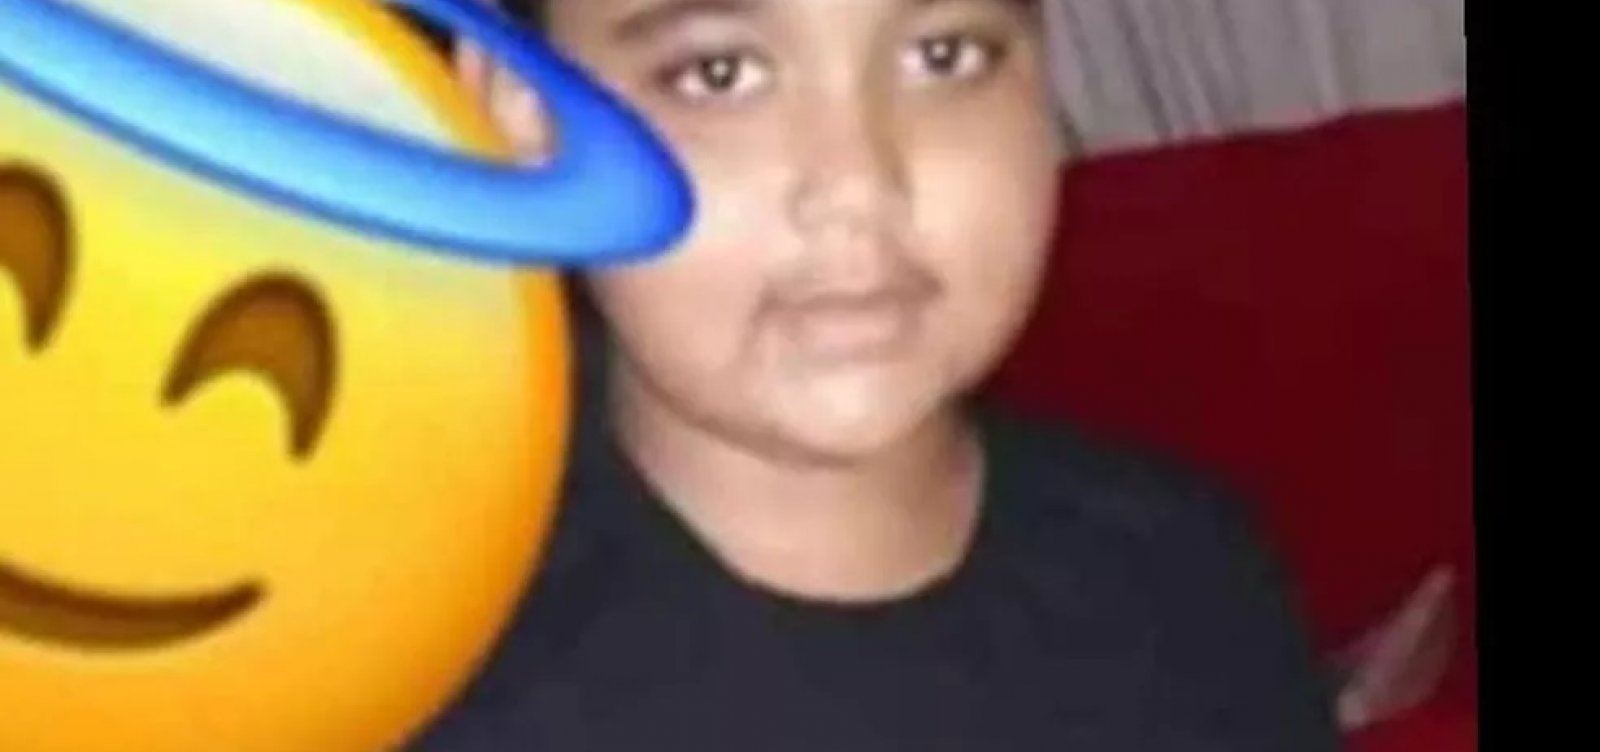 Criança de 10 anos após ser baleada em troca de tiros na RMS